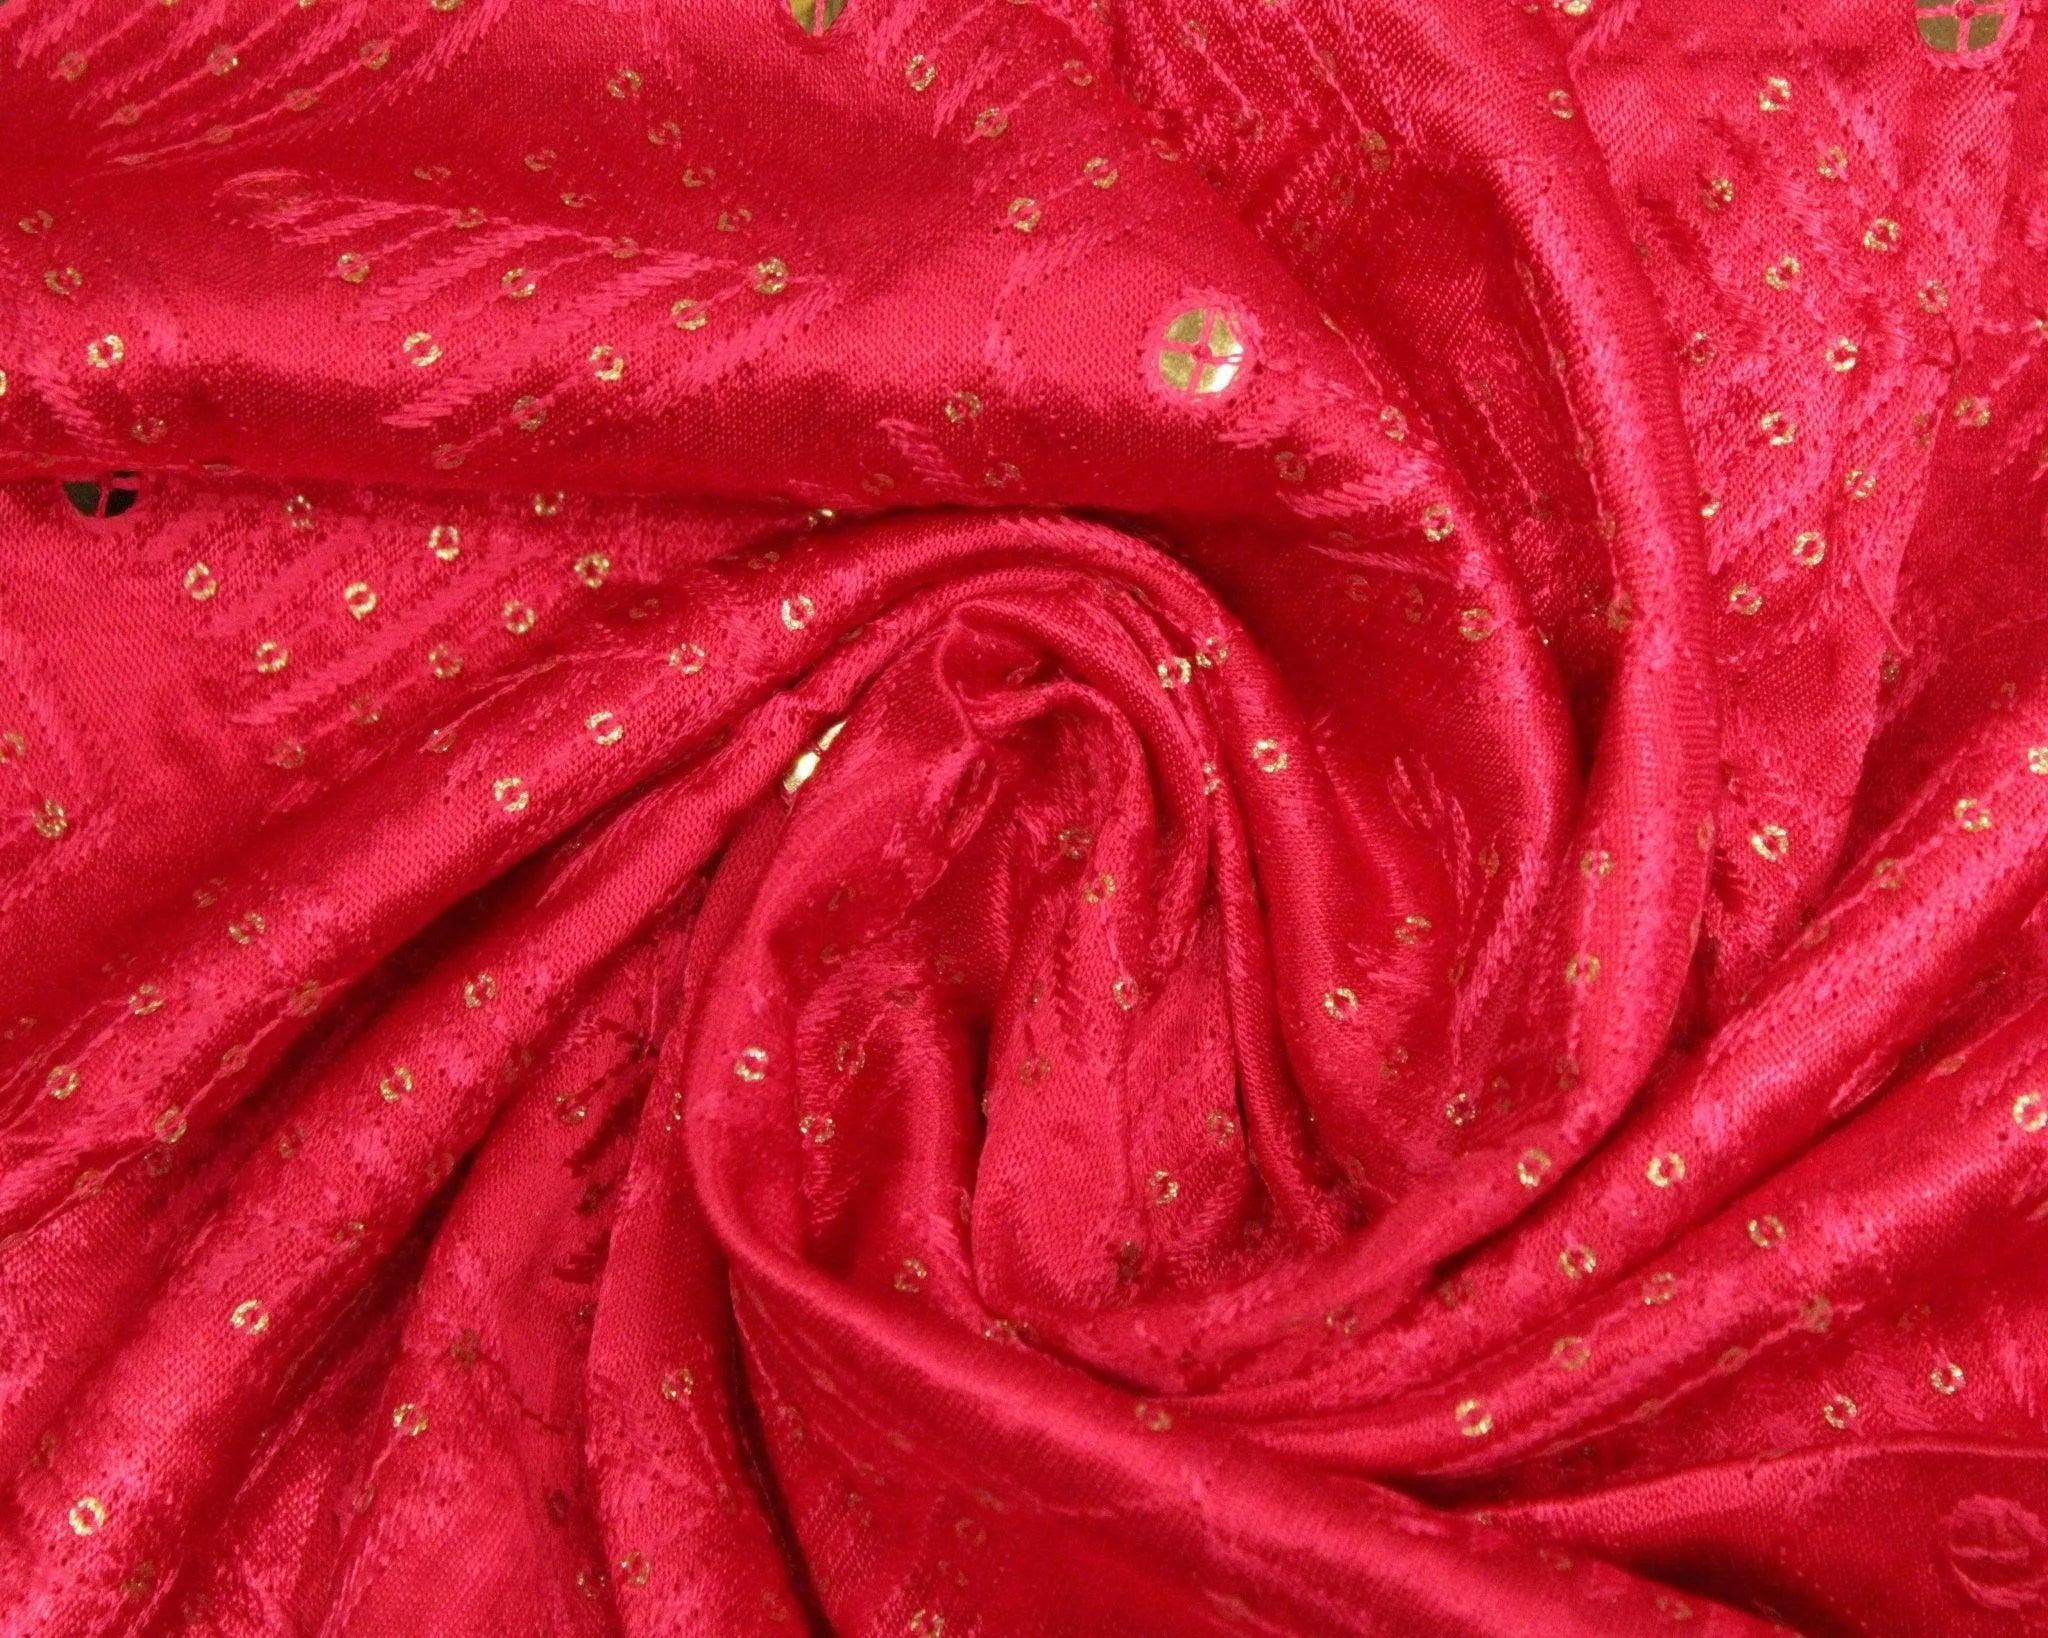 Gaji Silk Thread & Paper Mirror Work Fabric - Rani - M'Foks